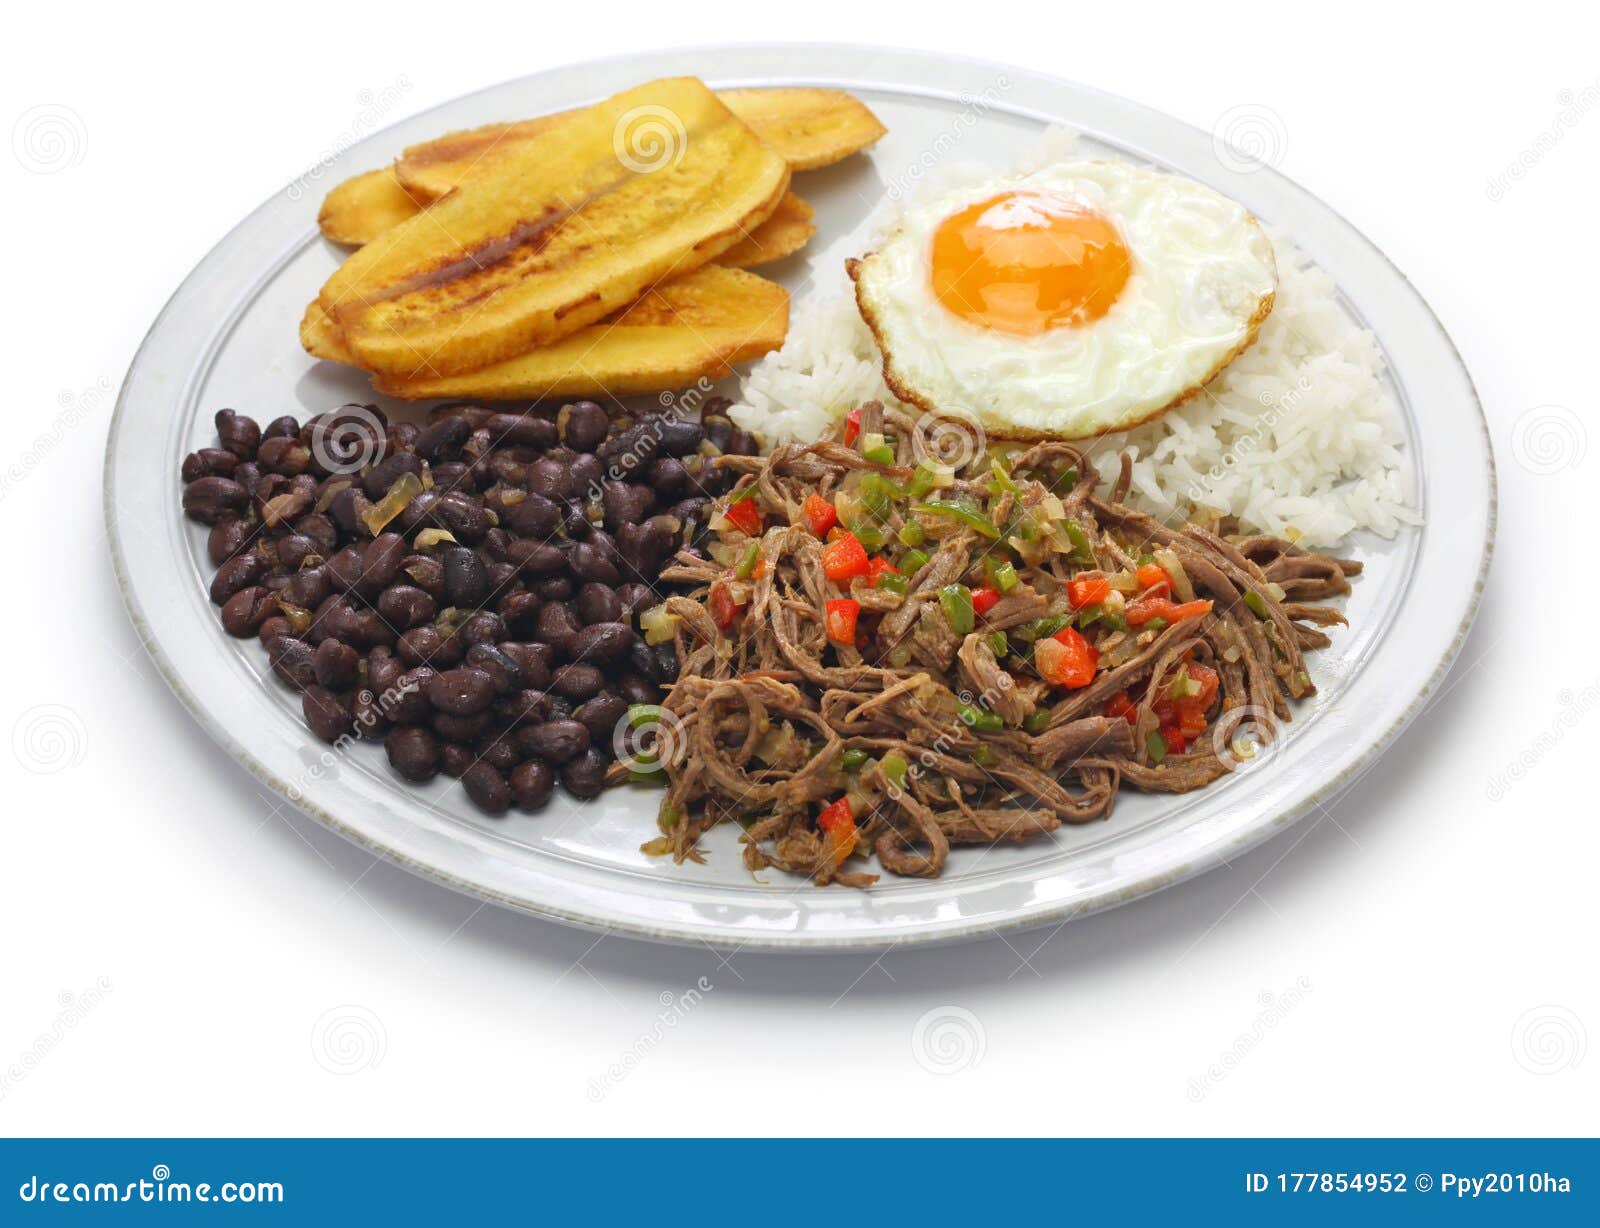 pabellon criollo, venezuelan national dish